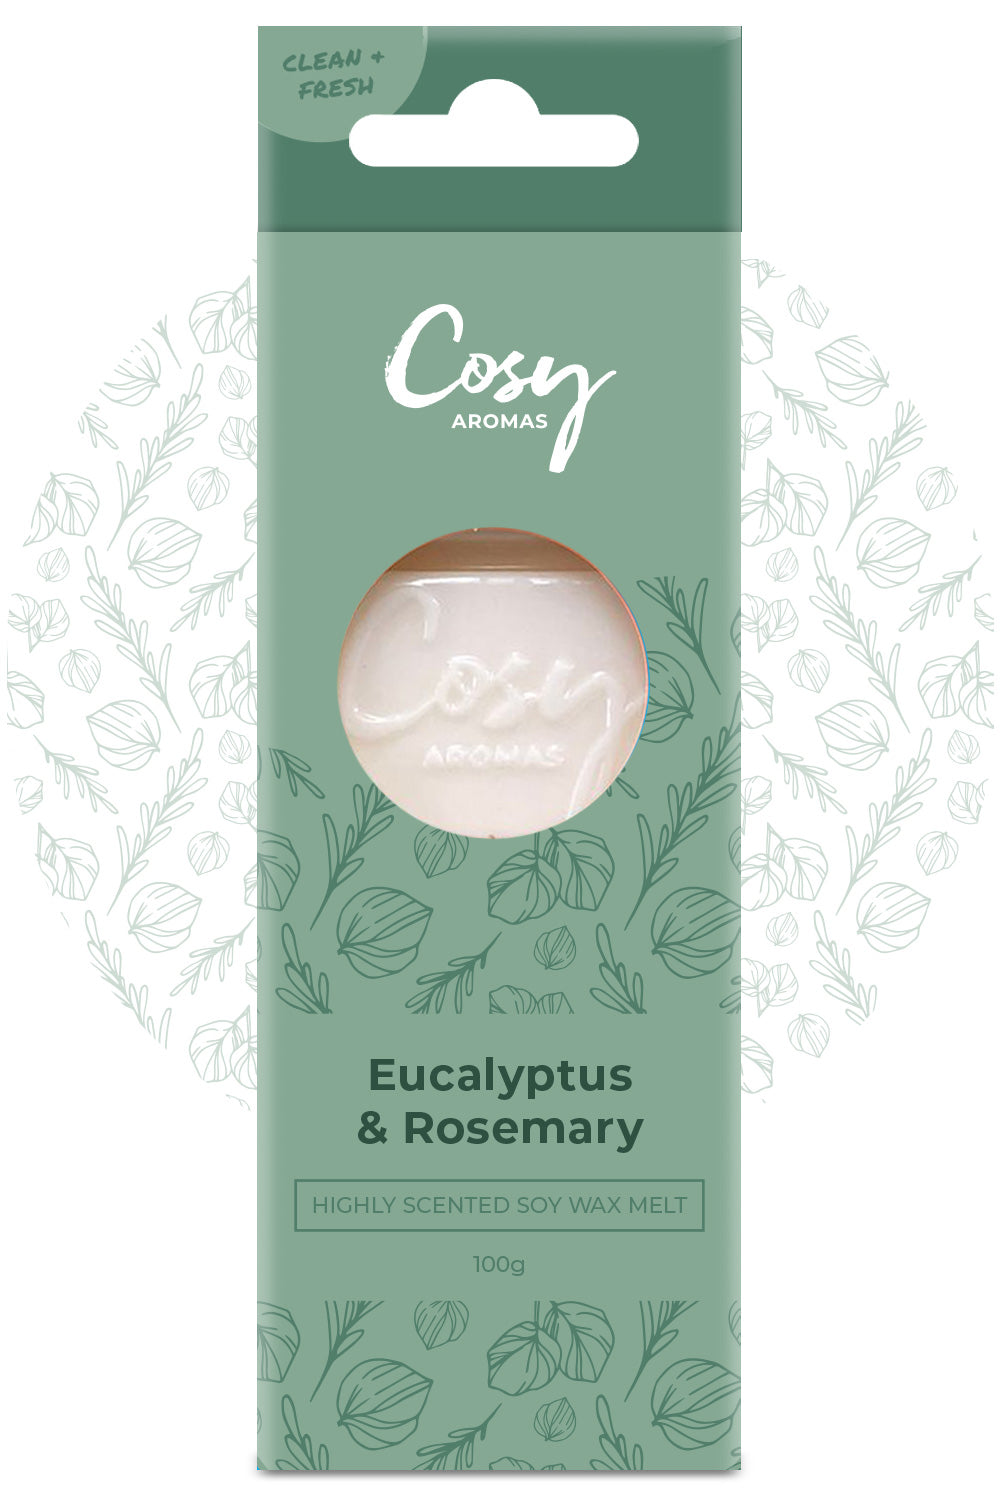 Eucalyptus & Rosemary Wax Melt